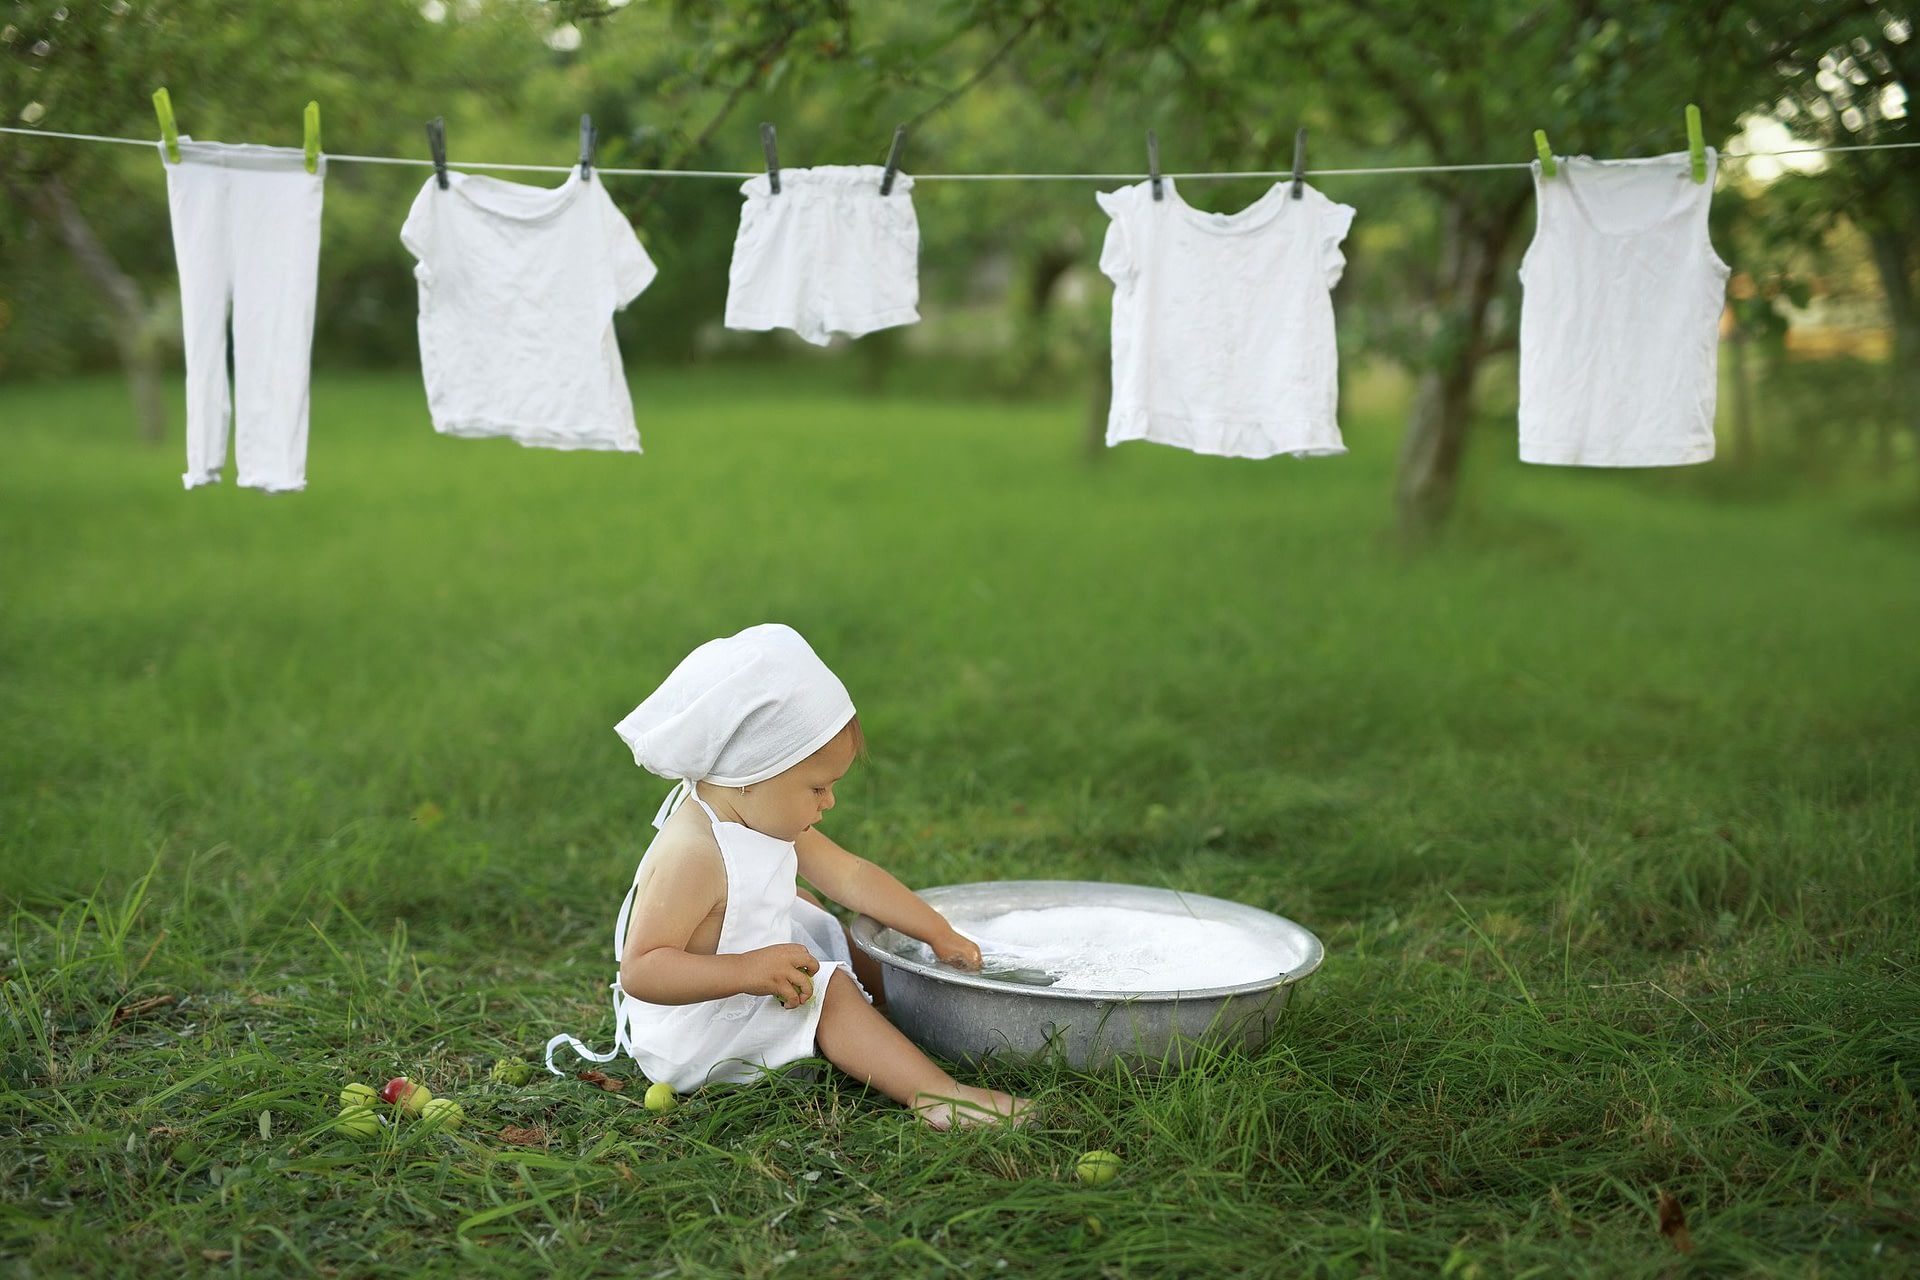 Cómo mantener la ropa limpia y sin manchas?